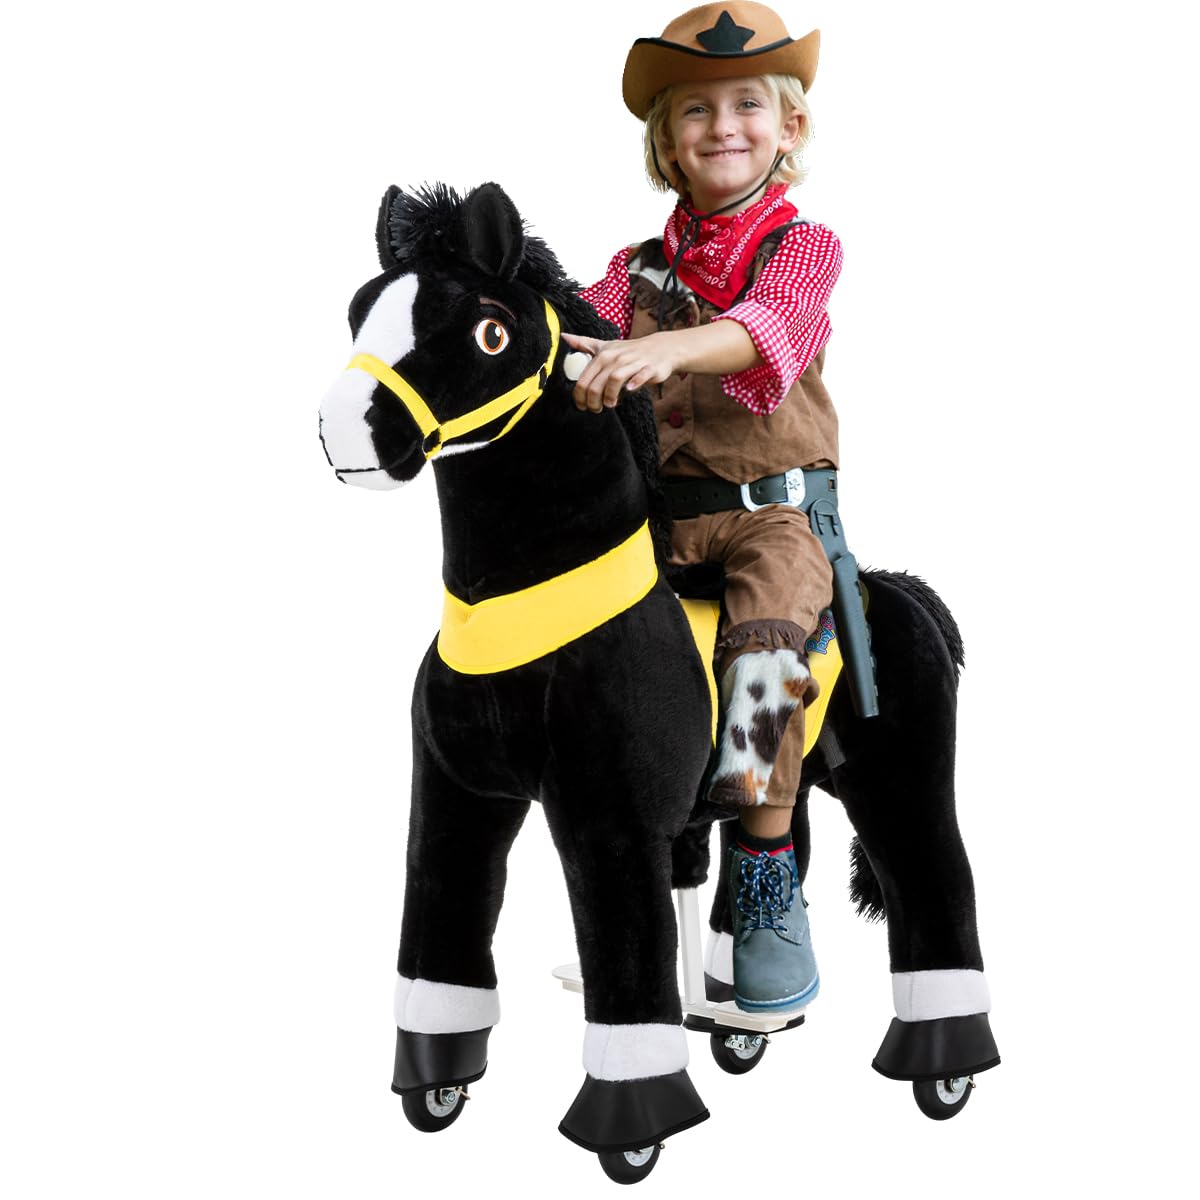 PonyCycle Black Beauty | 𝟯 𝐉𝐀𝐇𝐑𝐄 𝐆𝐀𝐑𝐀𝐍𝐓𝐈𝐄 - E-Serie Pferd - Schaukelpferd mit Handbremse - Kuscheltier - Spielpferd zum Reiten - Kinder Pony auf Rollen - Plüschtier - 3-5 Jahre